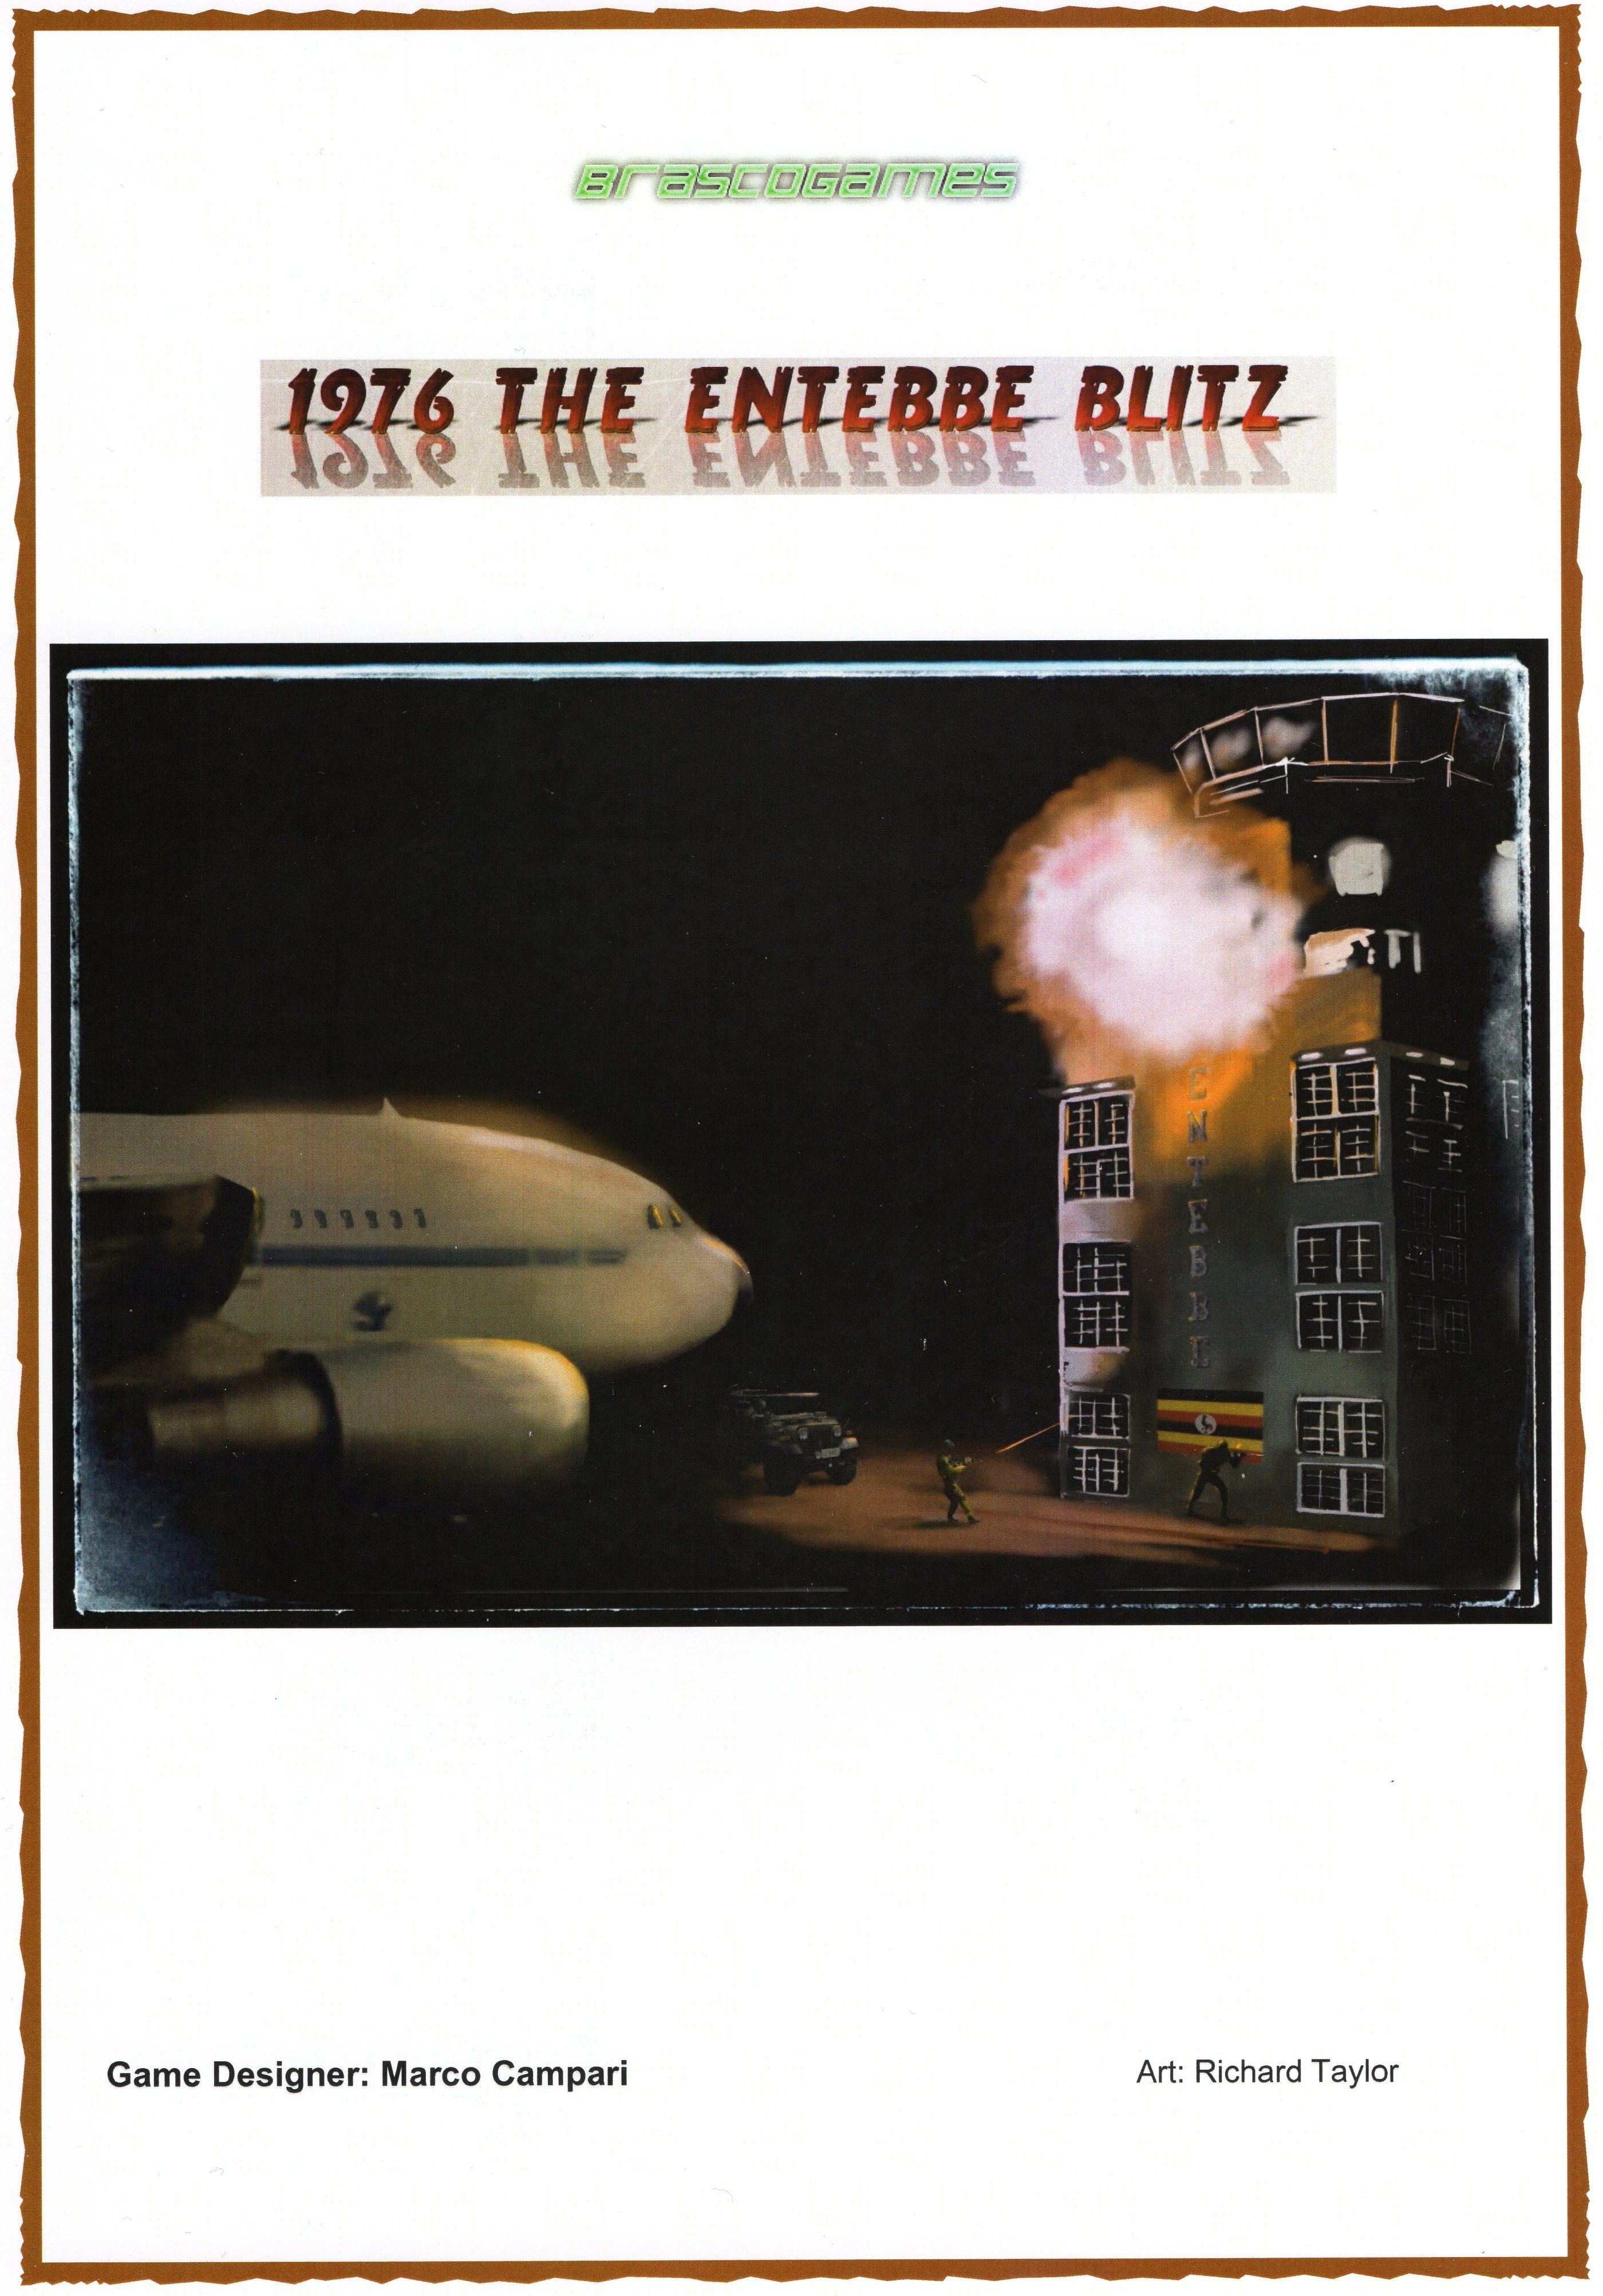 1976 The Entebbe Blitz